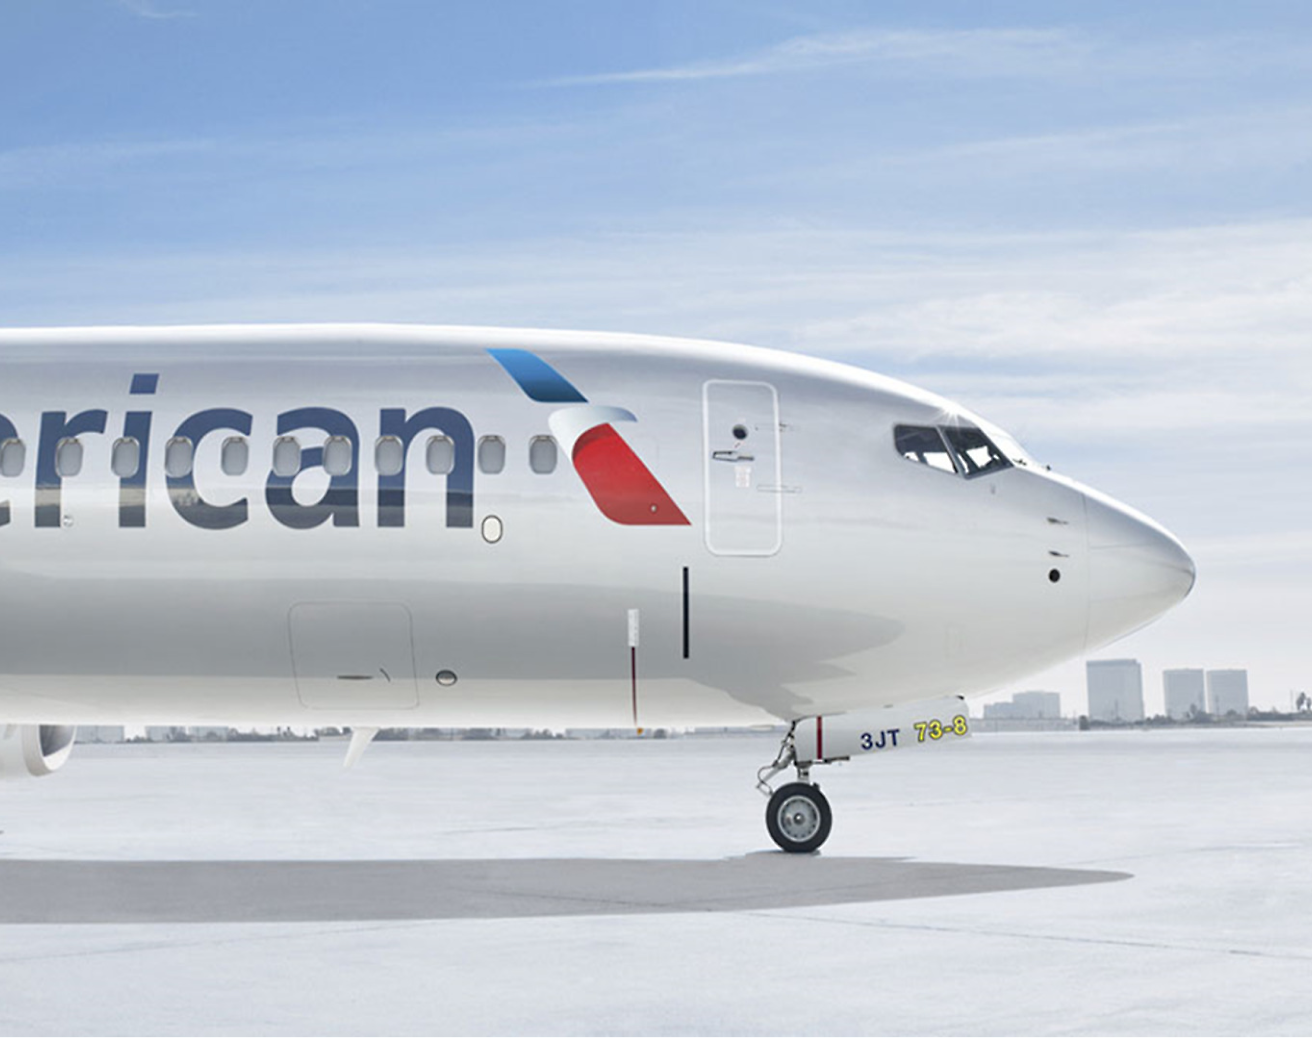 En frontvisning av et American Airlines-fly parkert på rullebanen under en skyfri himmel.